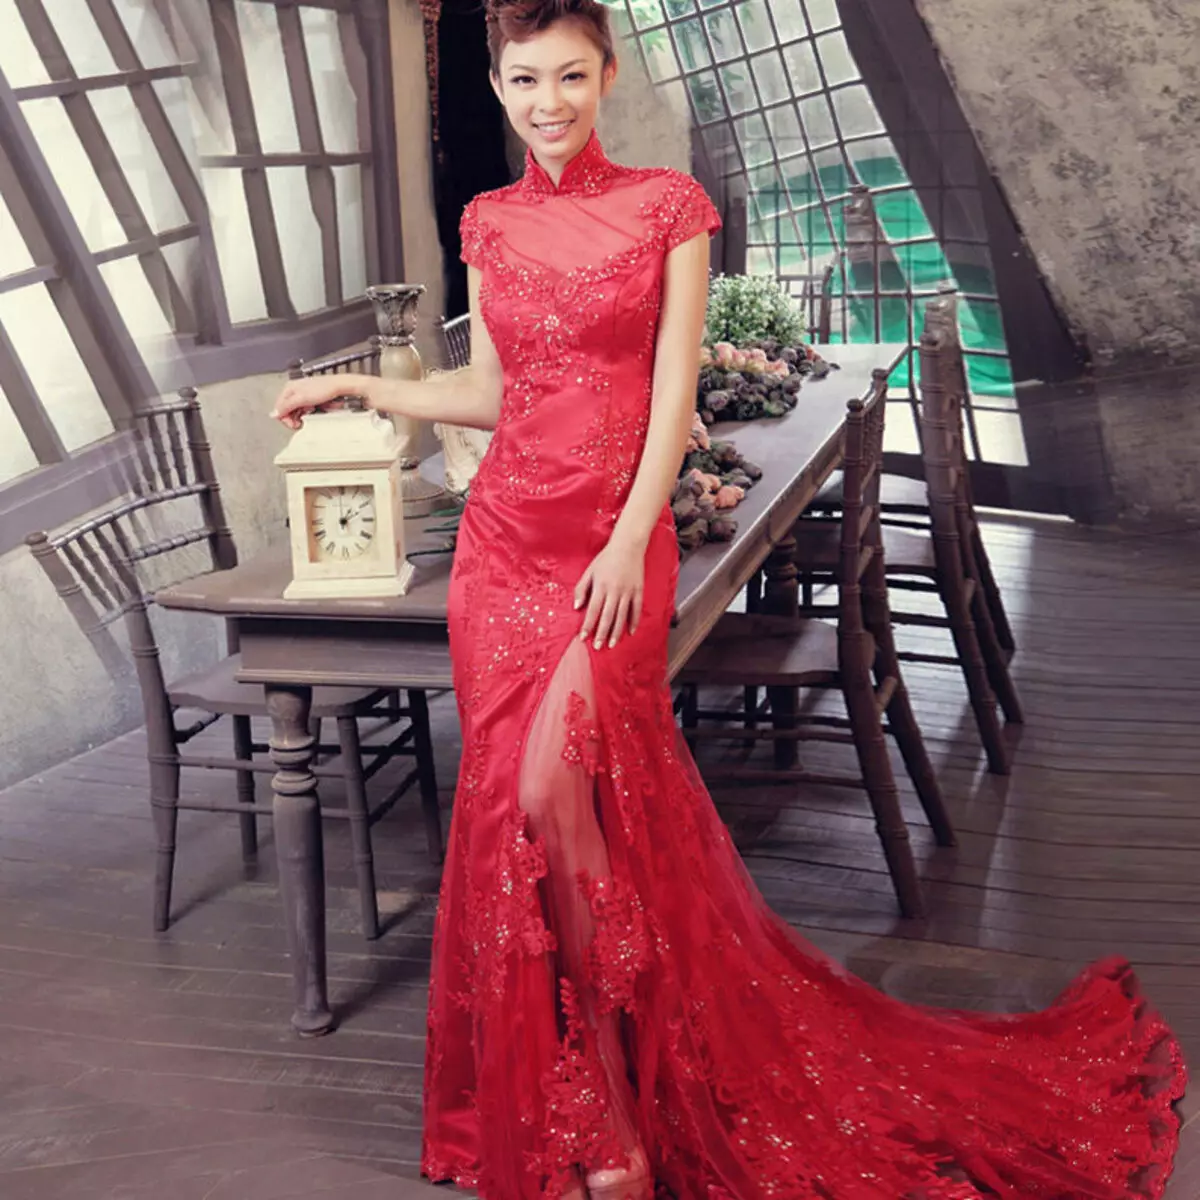 Vörös ruha csipke kínai stílusban